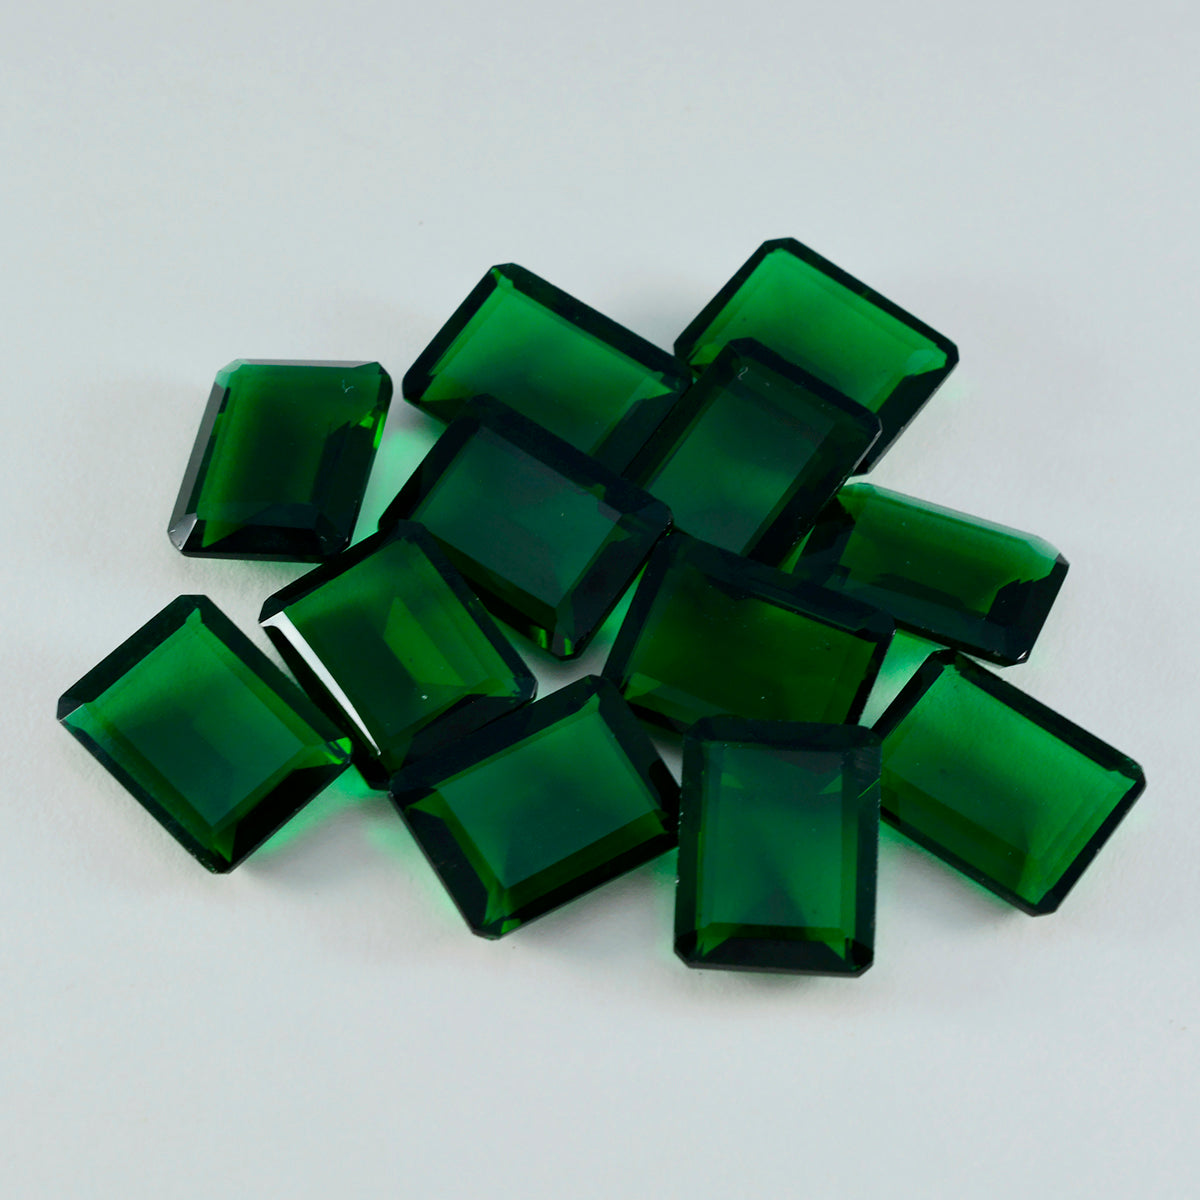 riyogems 1шт зеленый изумруд cz ограненный 8x10 мм восьмиугольная форма привлекательные качественные драгоценные камни